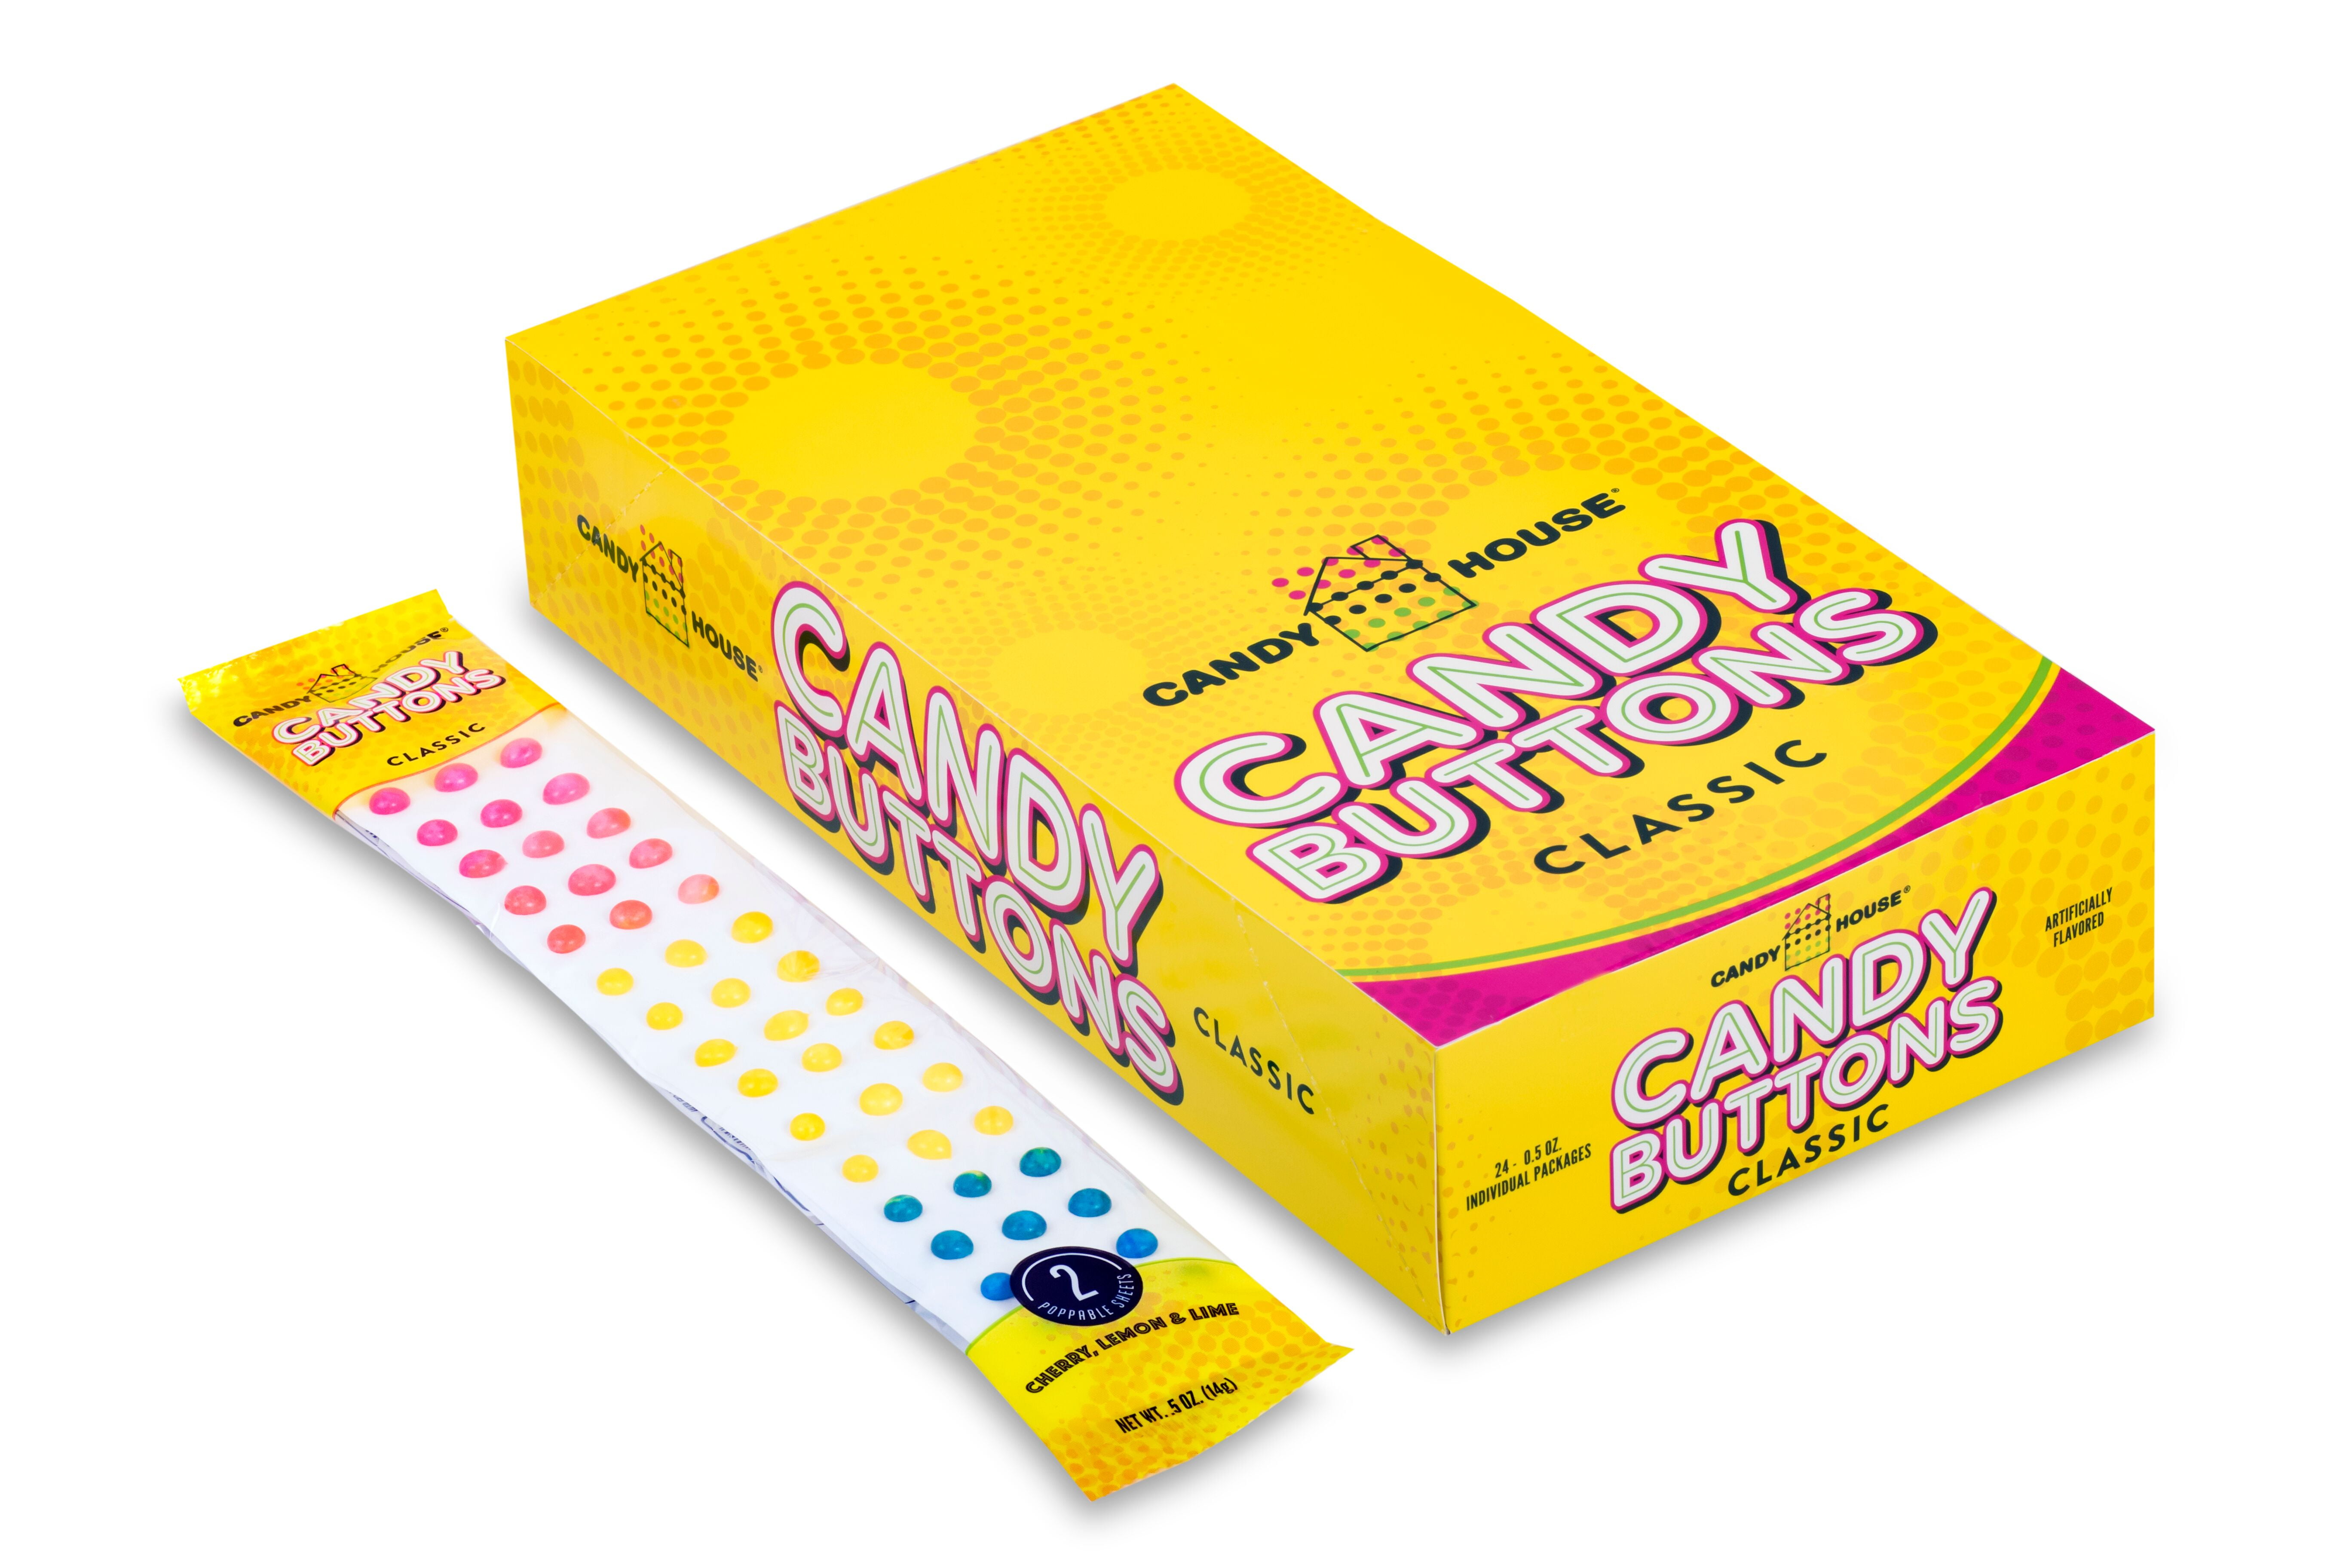 Candy House Candy Button's Original 1oz – BevMo!